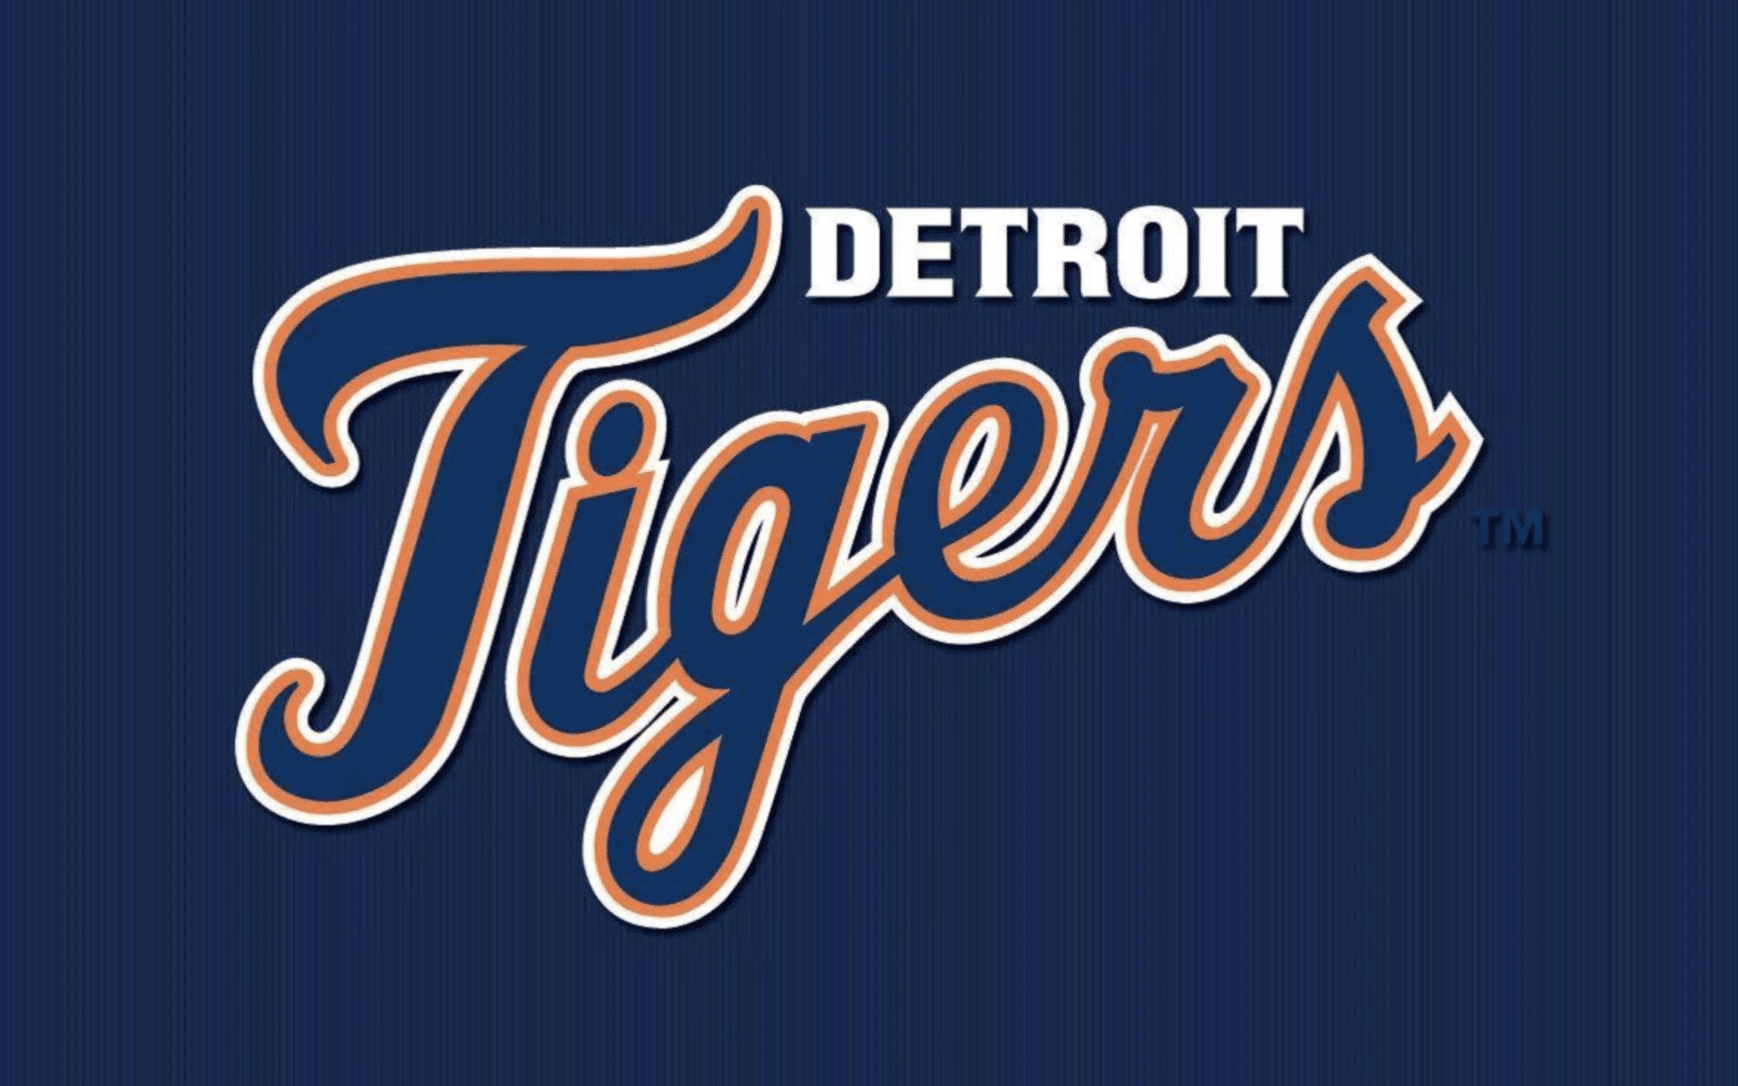 Upset Detroit Tigers fans